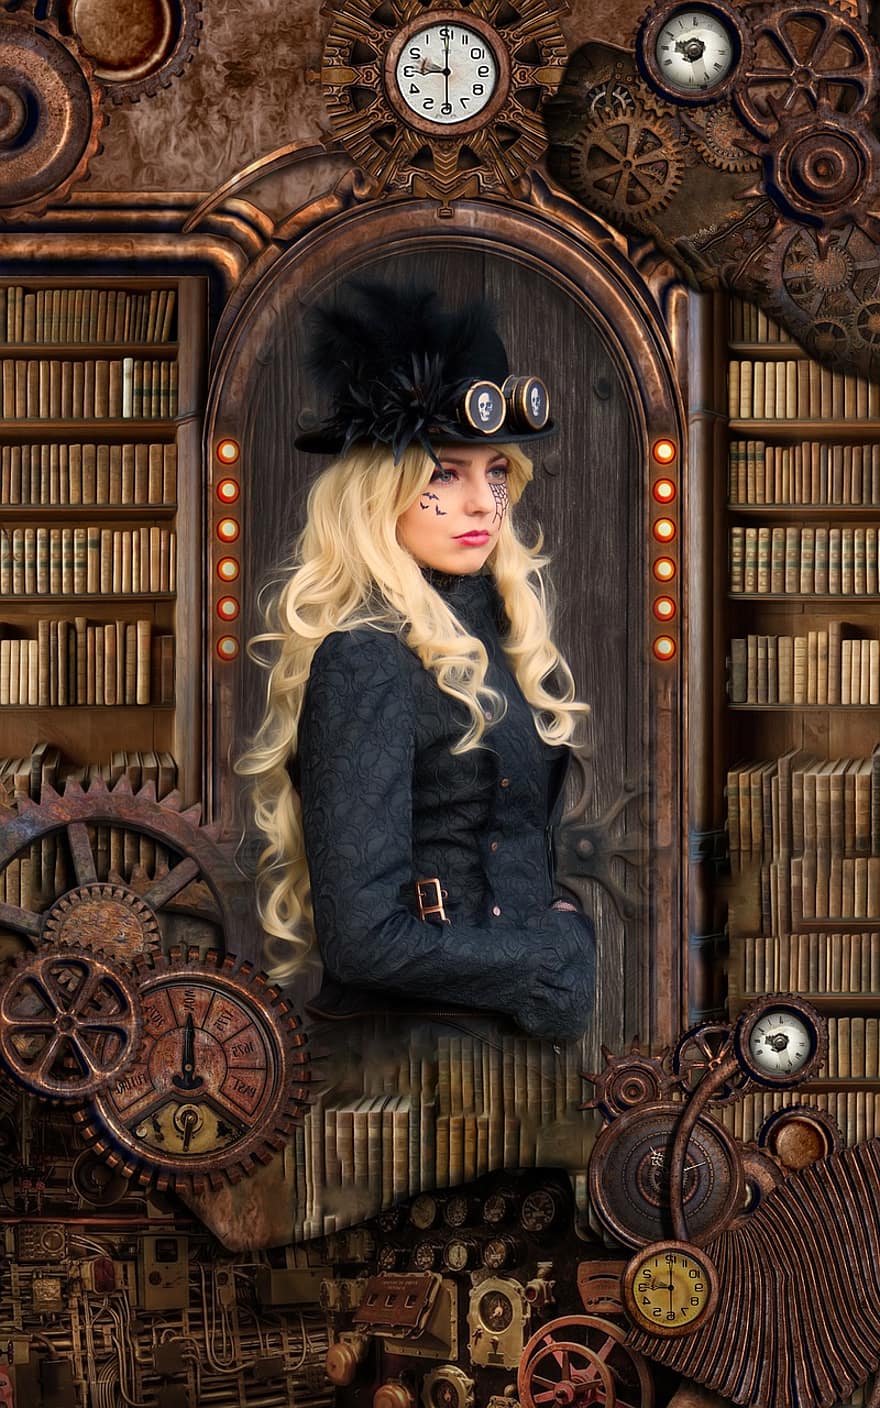 žena, vinobraní, charakter, steampunk, viktoriánský, knih, fantazie, retro, ženský